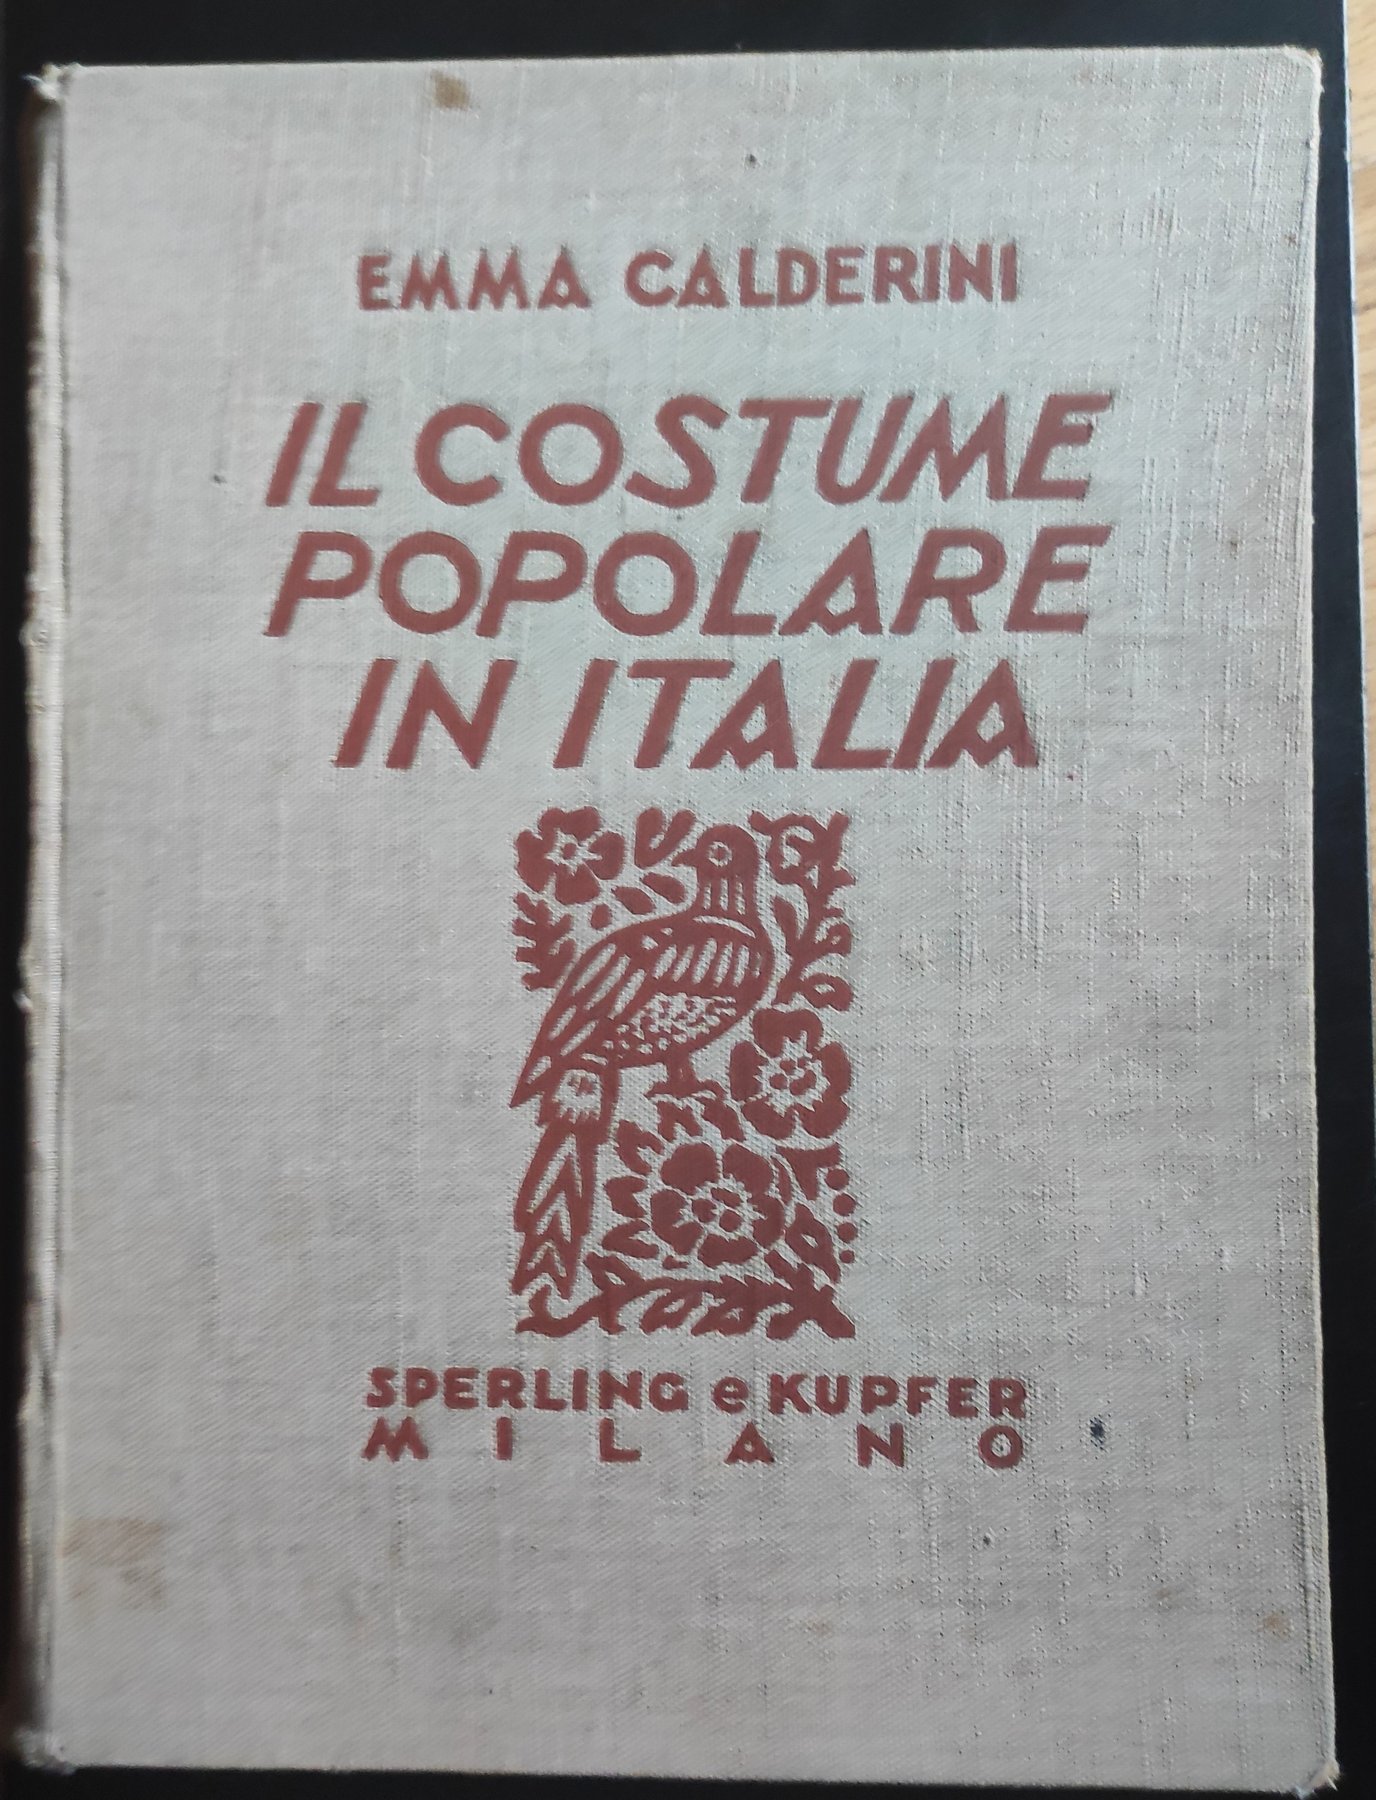 Un libro importante in asta: “Il Costume Popolare in Italia” (1934) di Emma Calderini